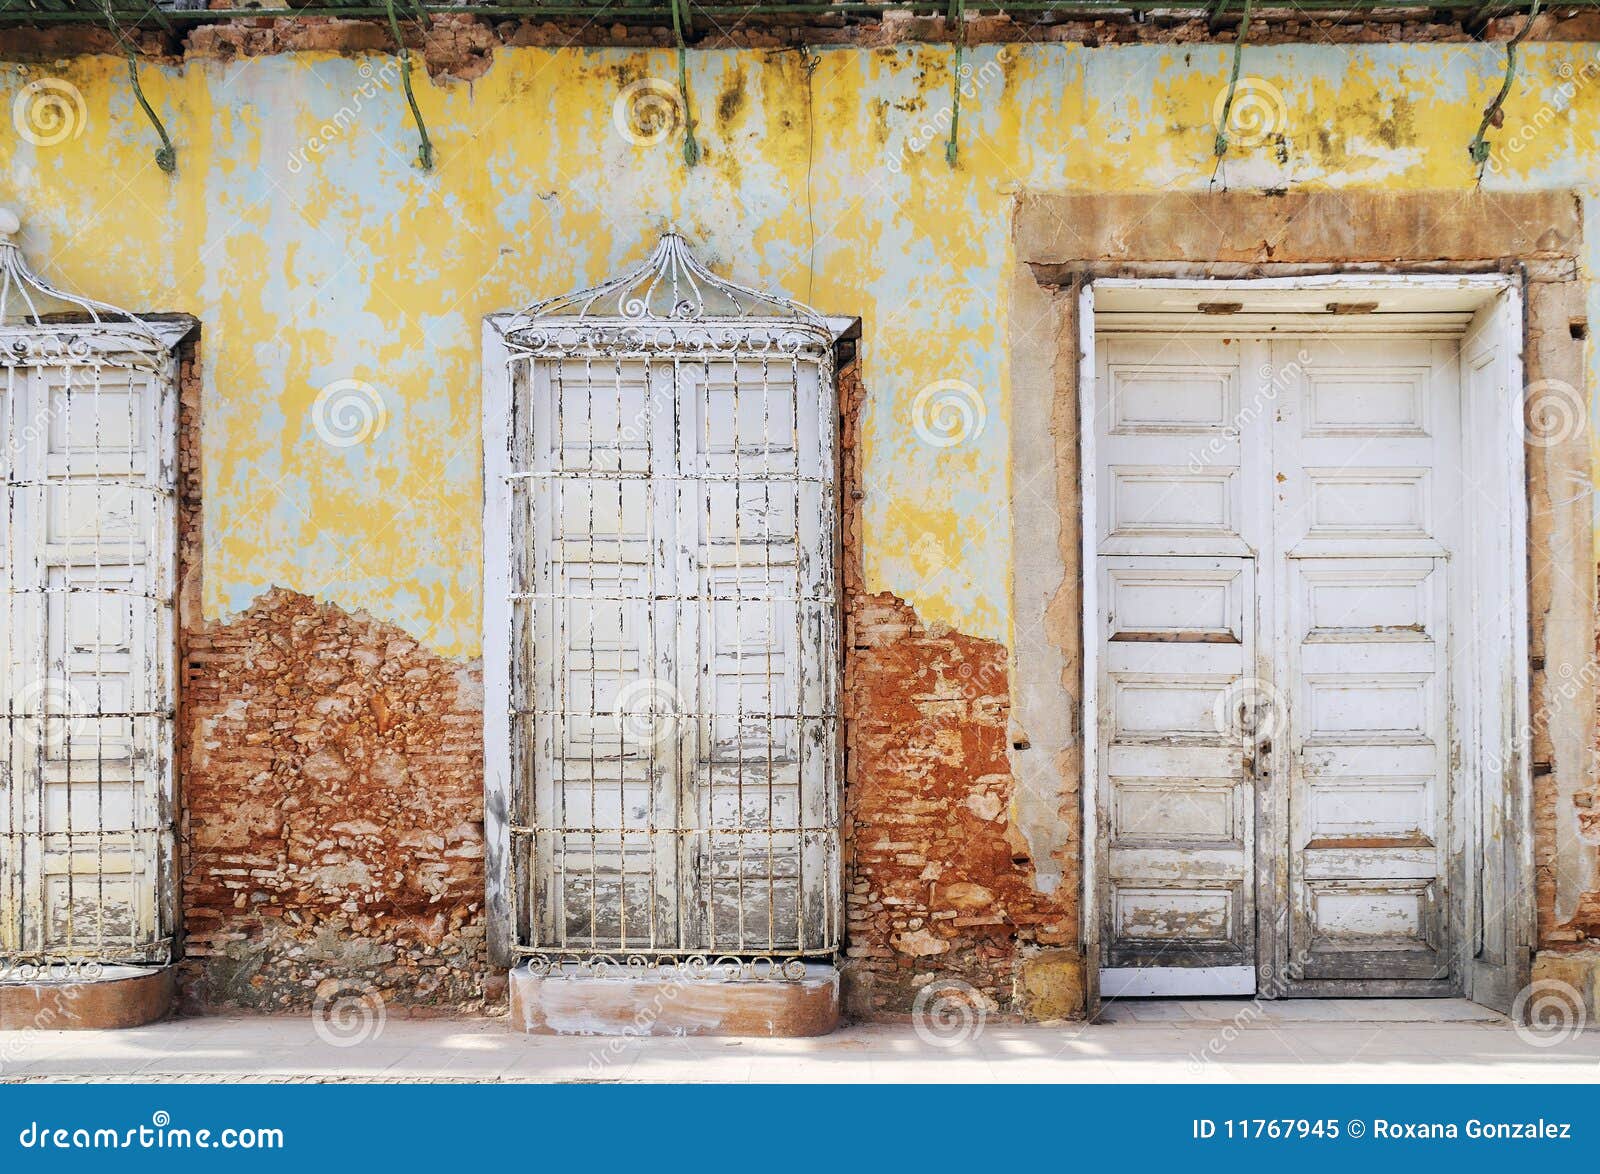 vintage eroded facade in trinidad, cuba